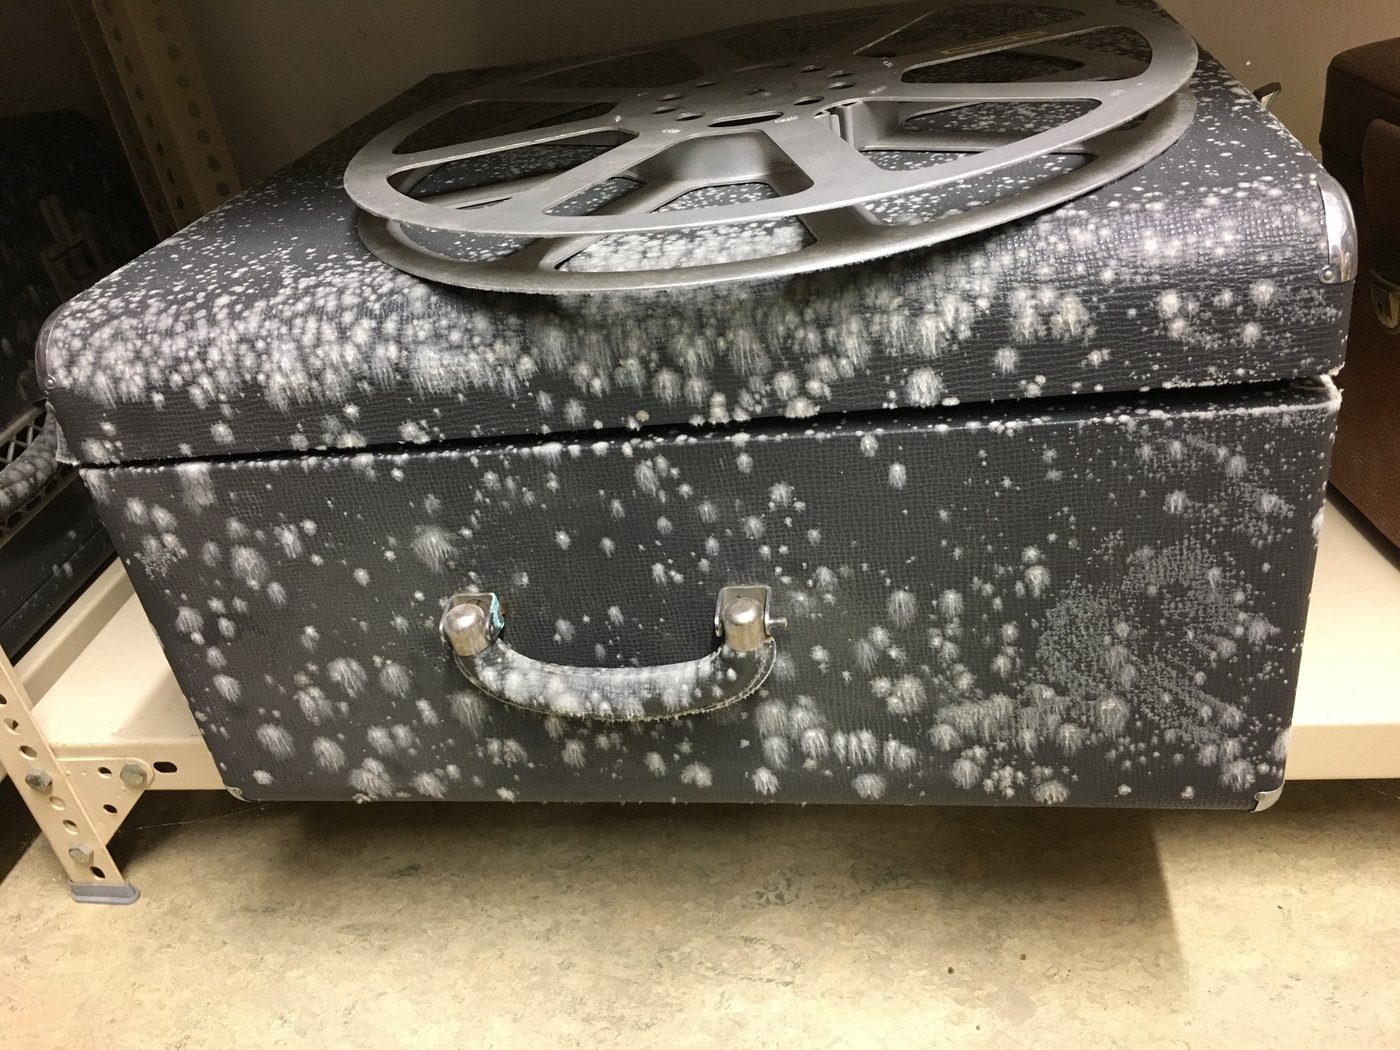 Ein schwarzer Koffer, auf dem eine leere Filmrolle liegt. Der Koffer ist von weißen Schimmelpilzkolonien bedeckt